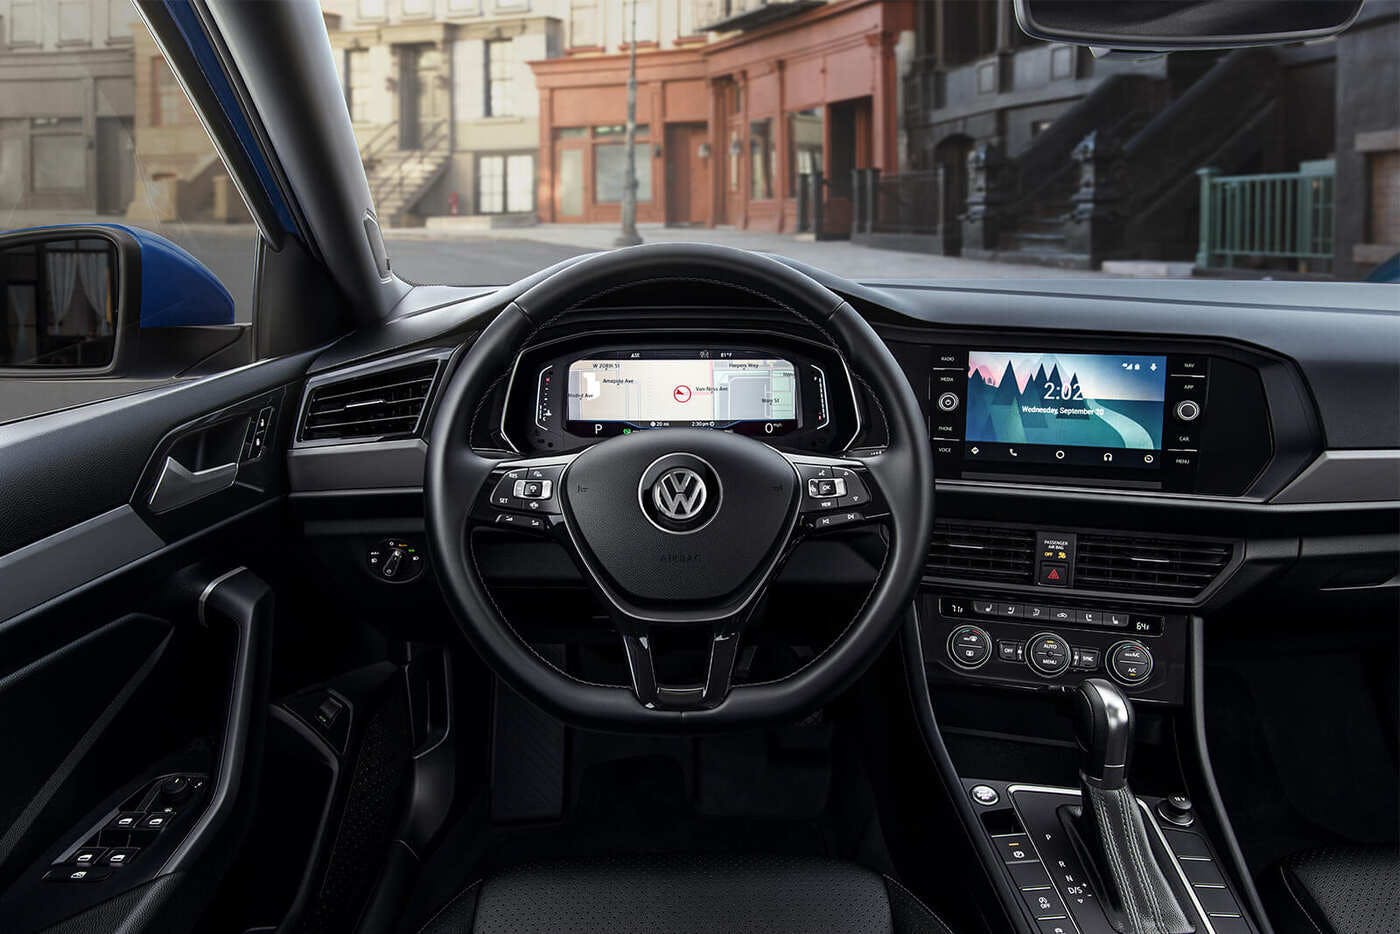 2019 Volkswagen Jetta Comparisons Reviews Pictures Truecar